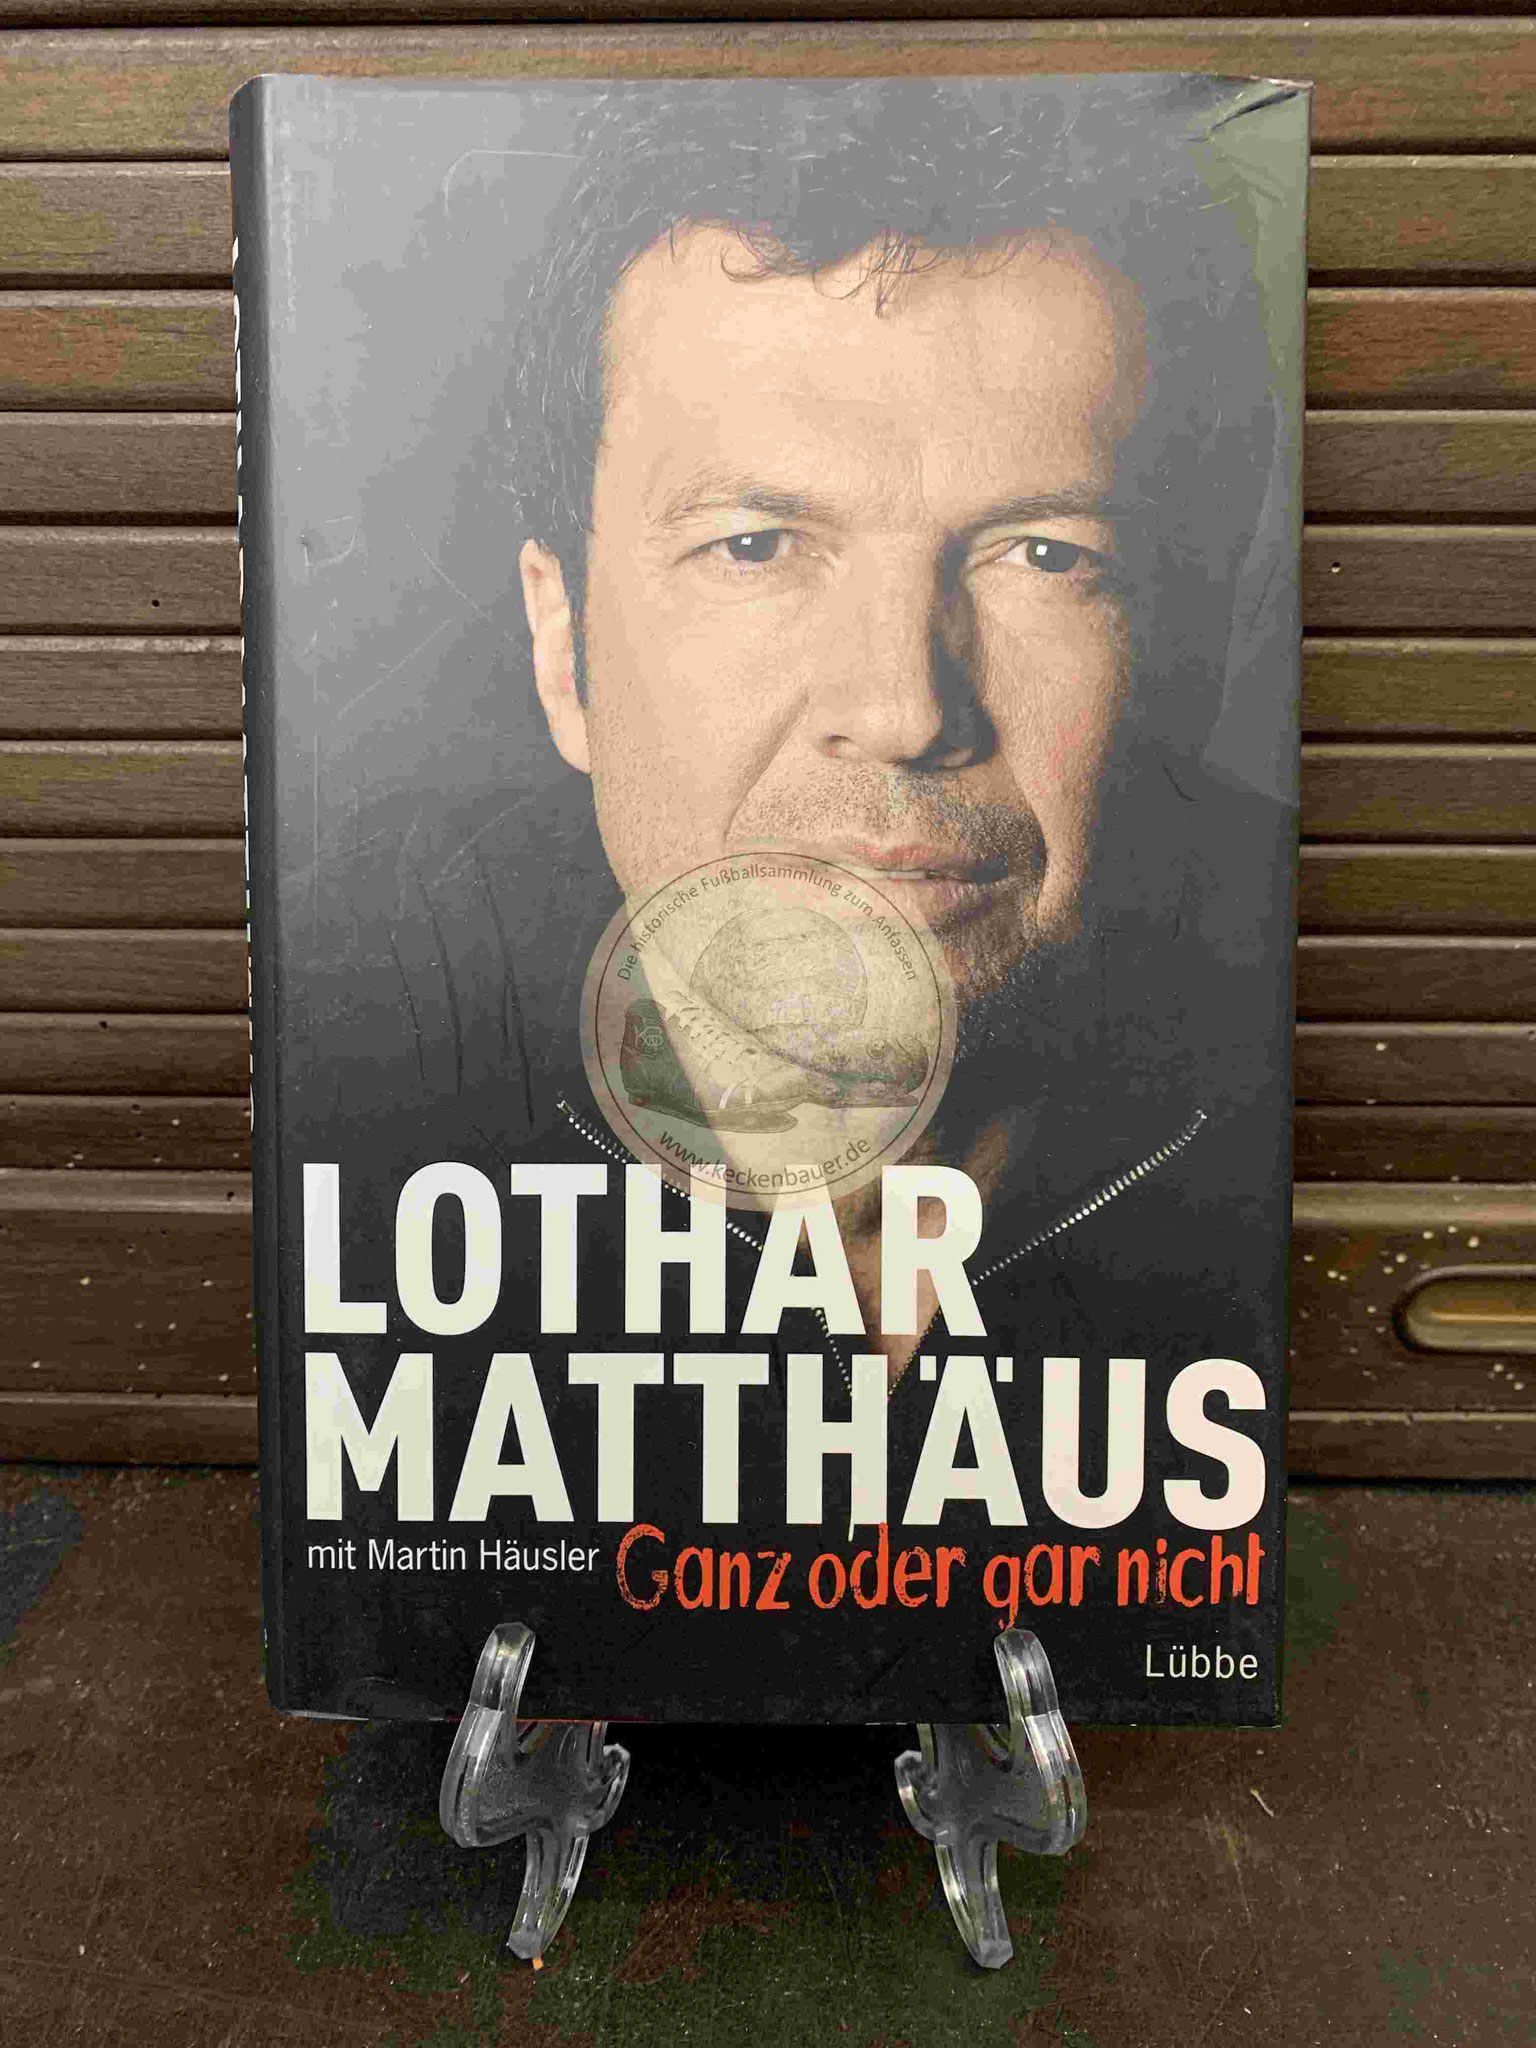 Lothar Matthäus Ganz oder gar nicht aus dem Jahr 2012